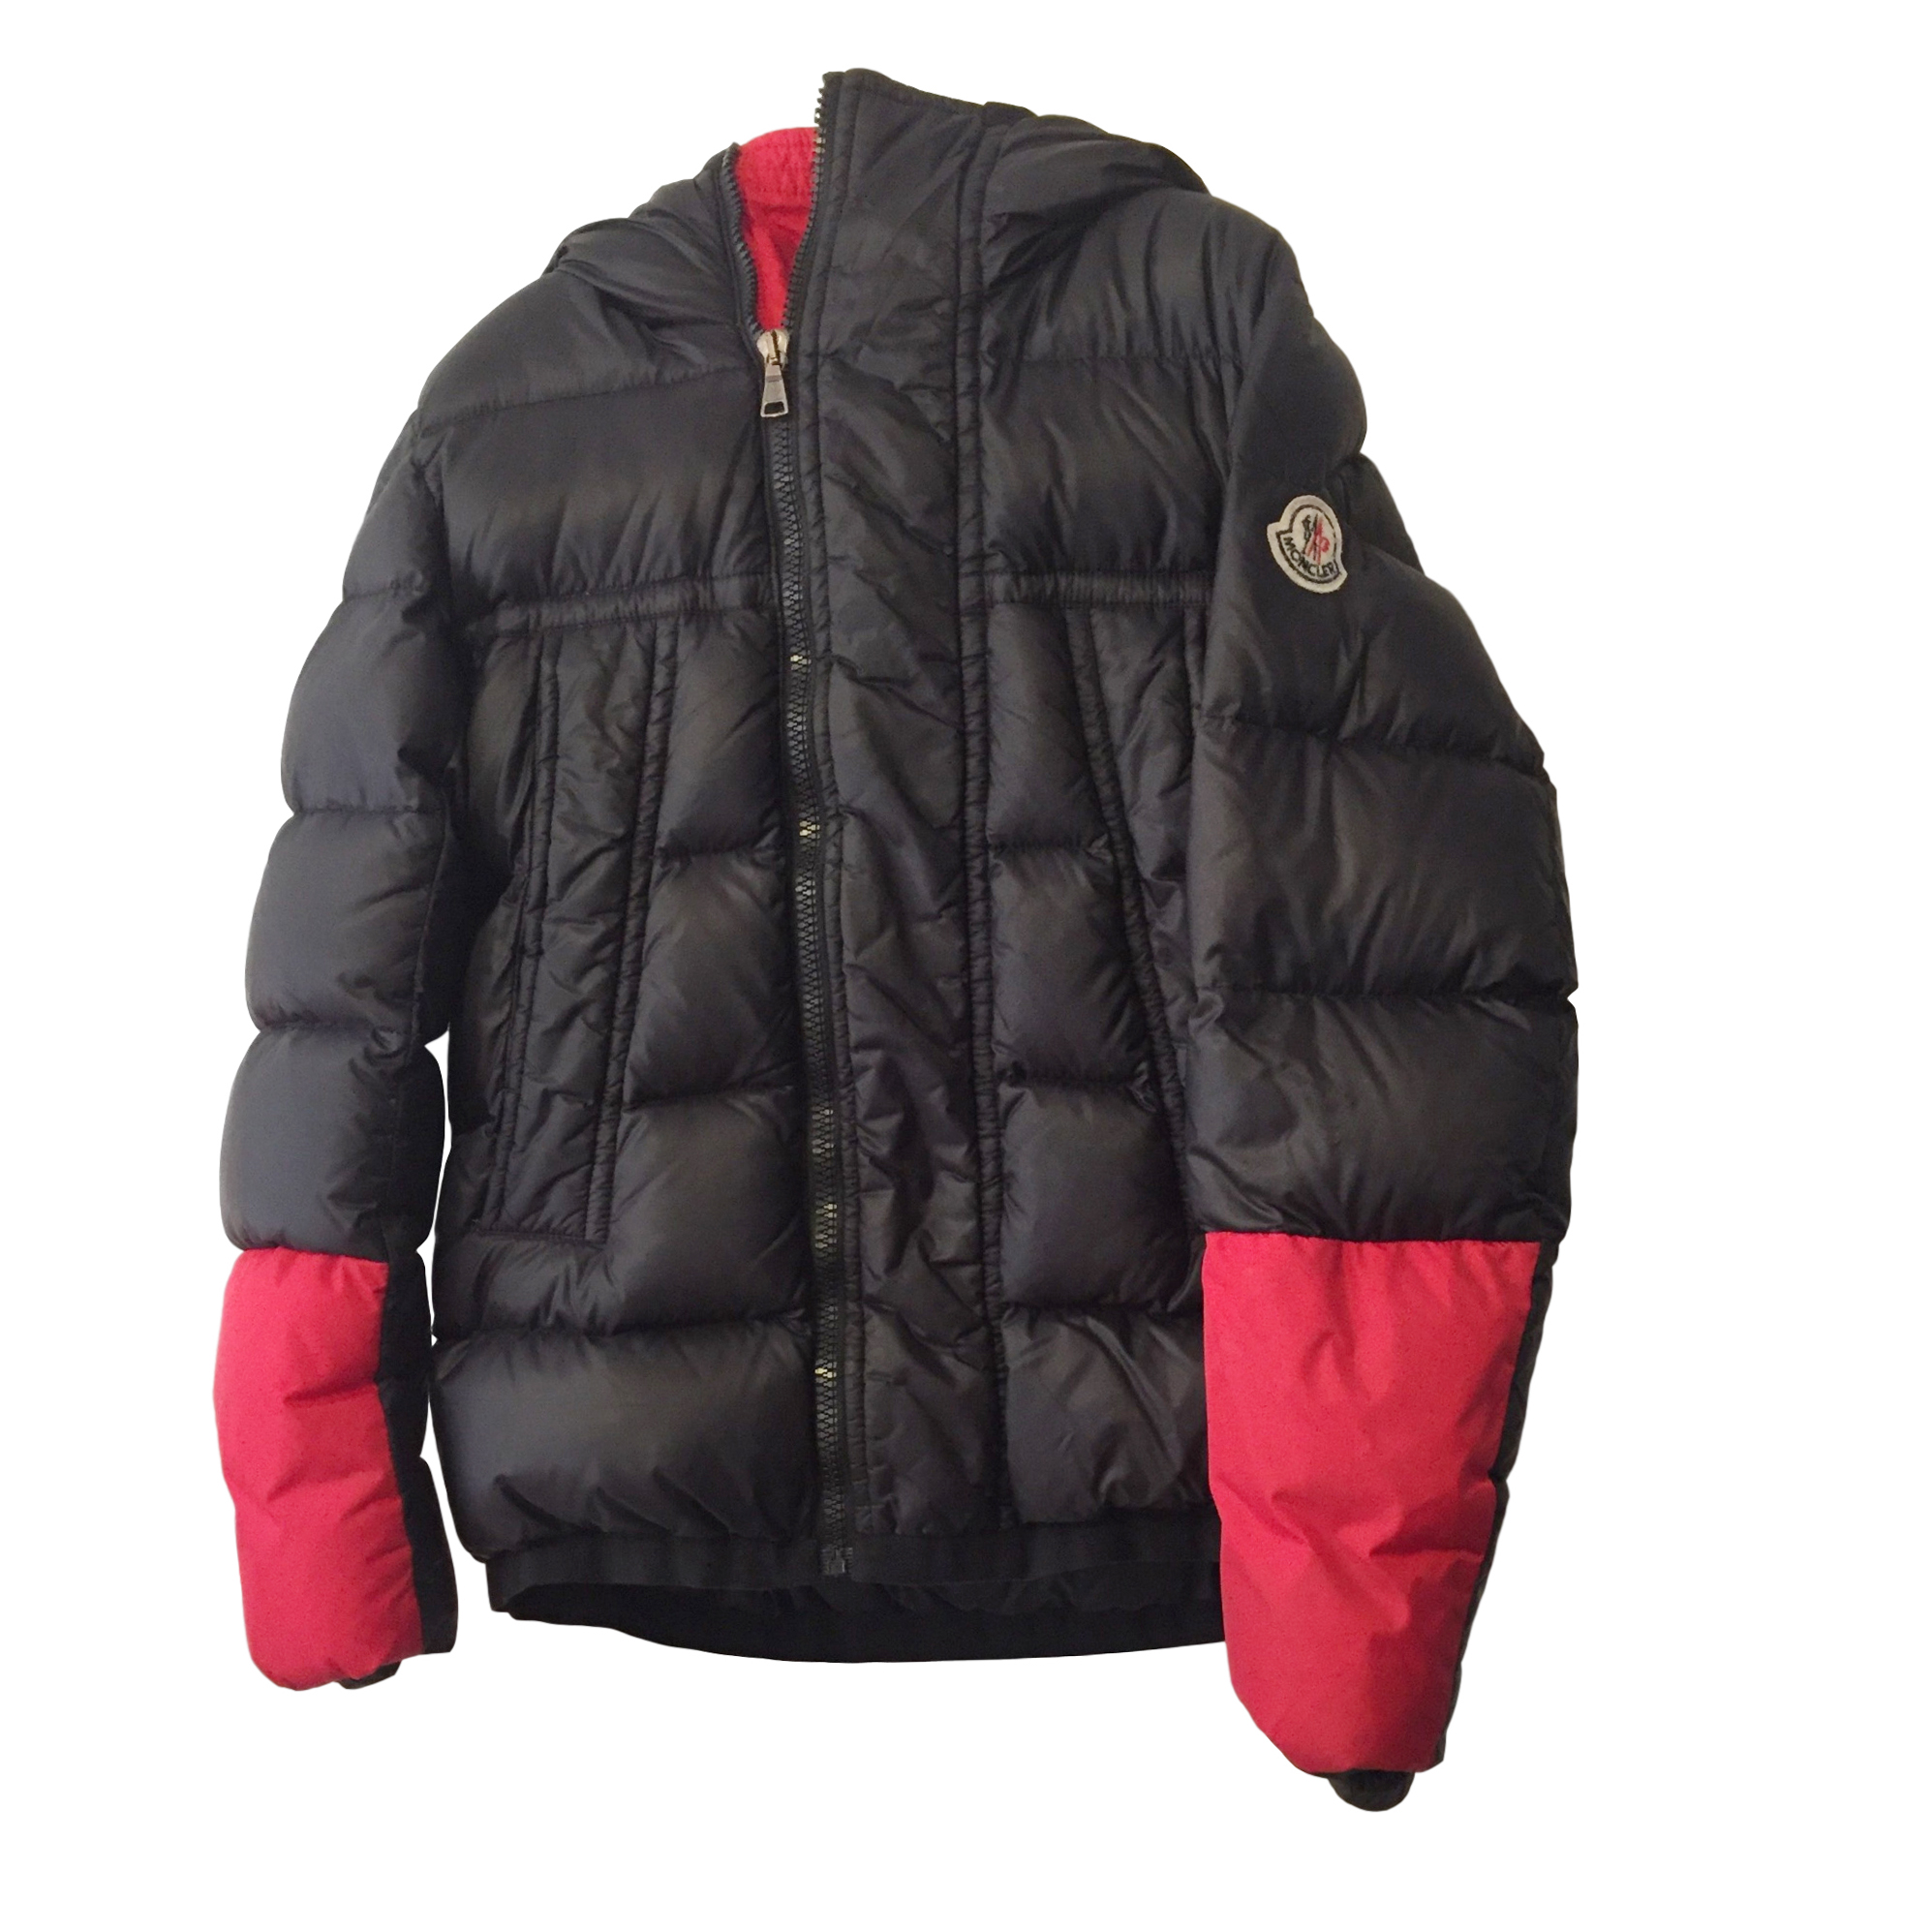 moncler red black jacket